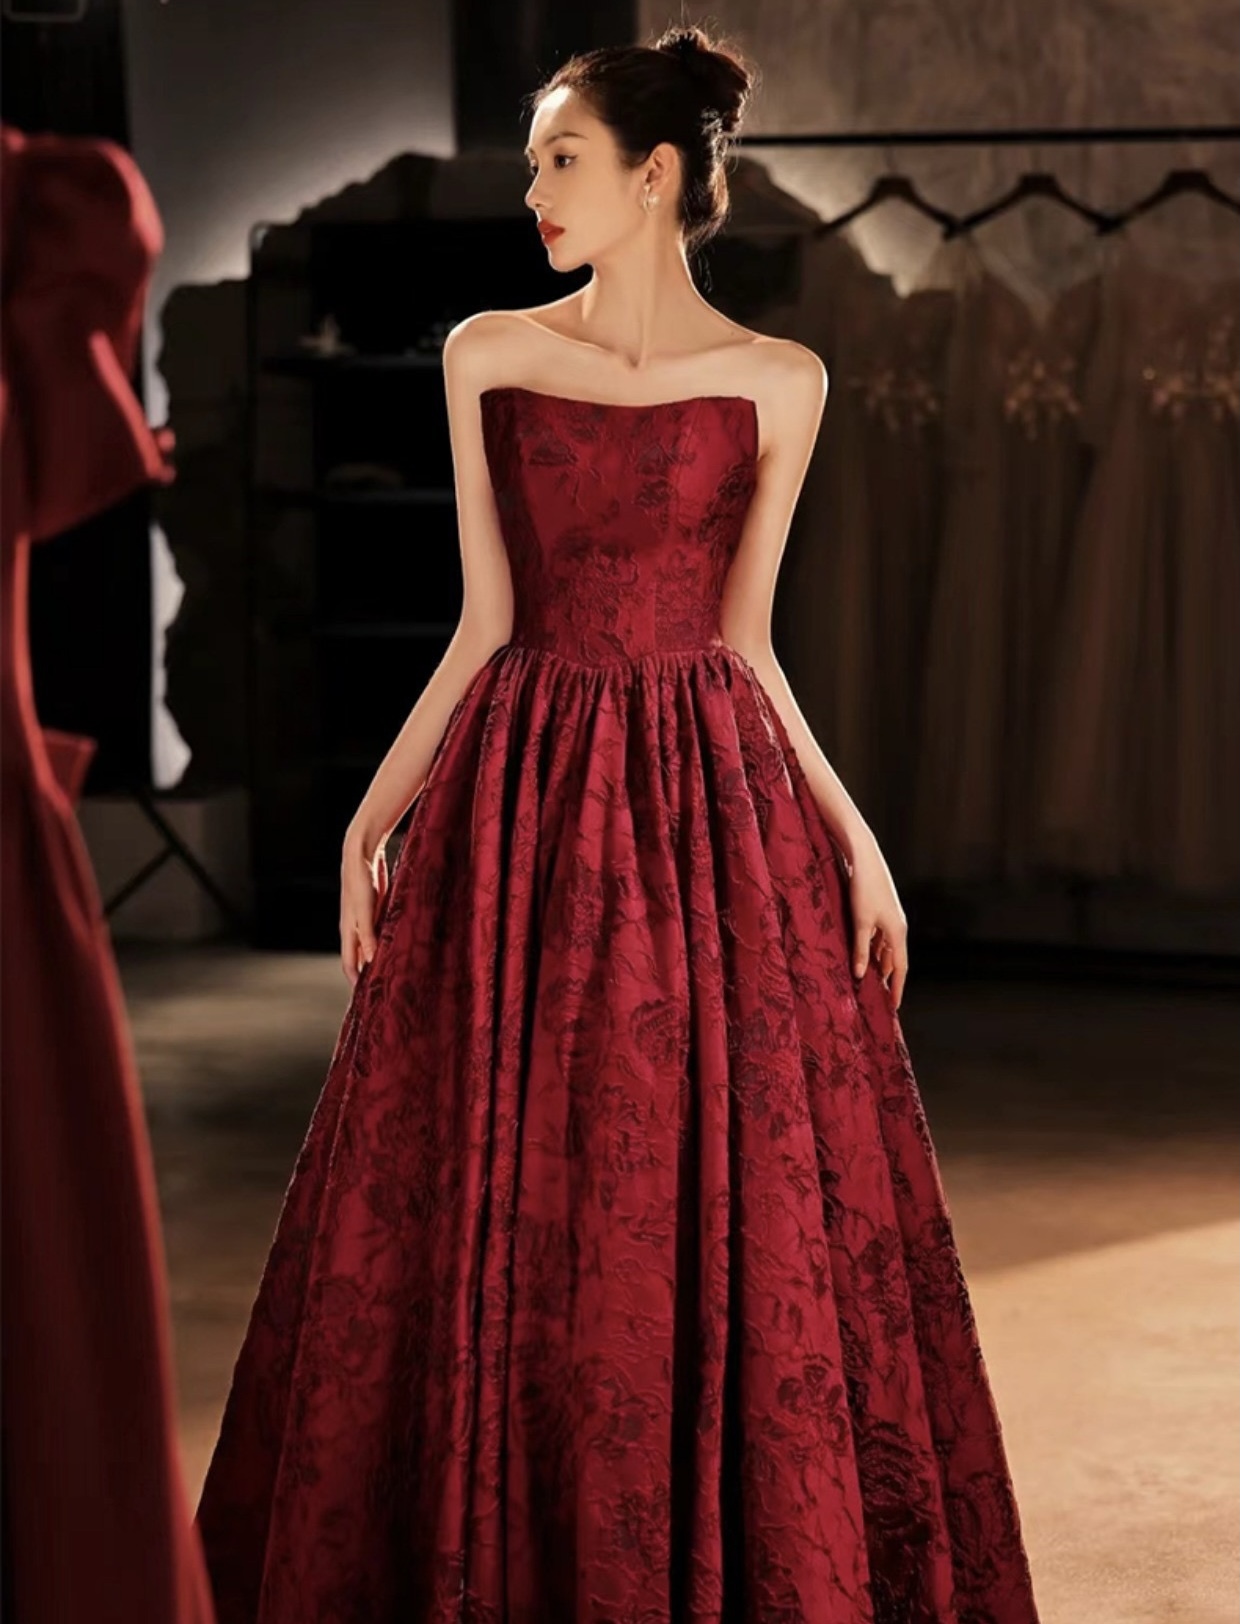 Strapless Evening Dress,burgundy Prom Dress ,elegant Party Dress,unique Jacquard Dress, Custom Made